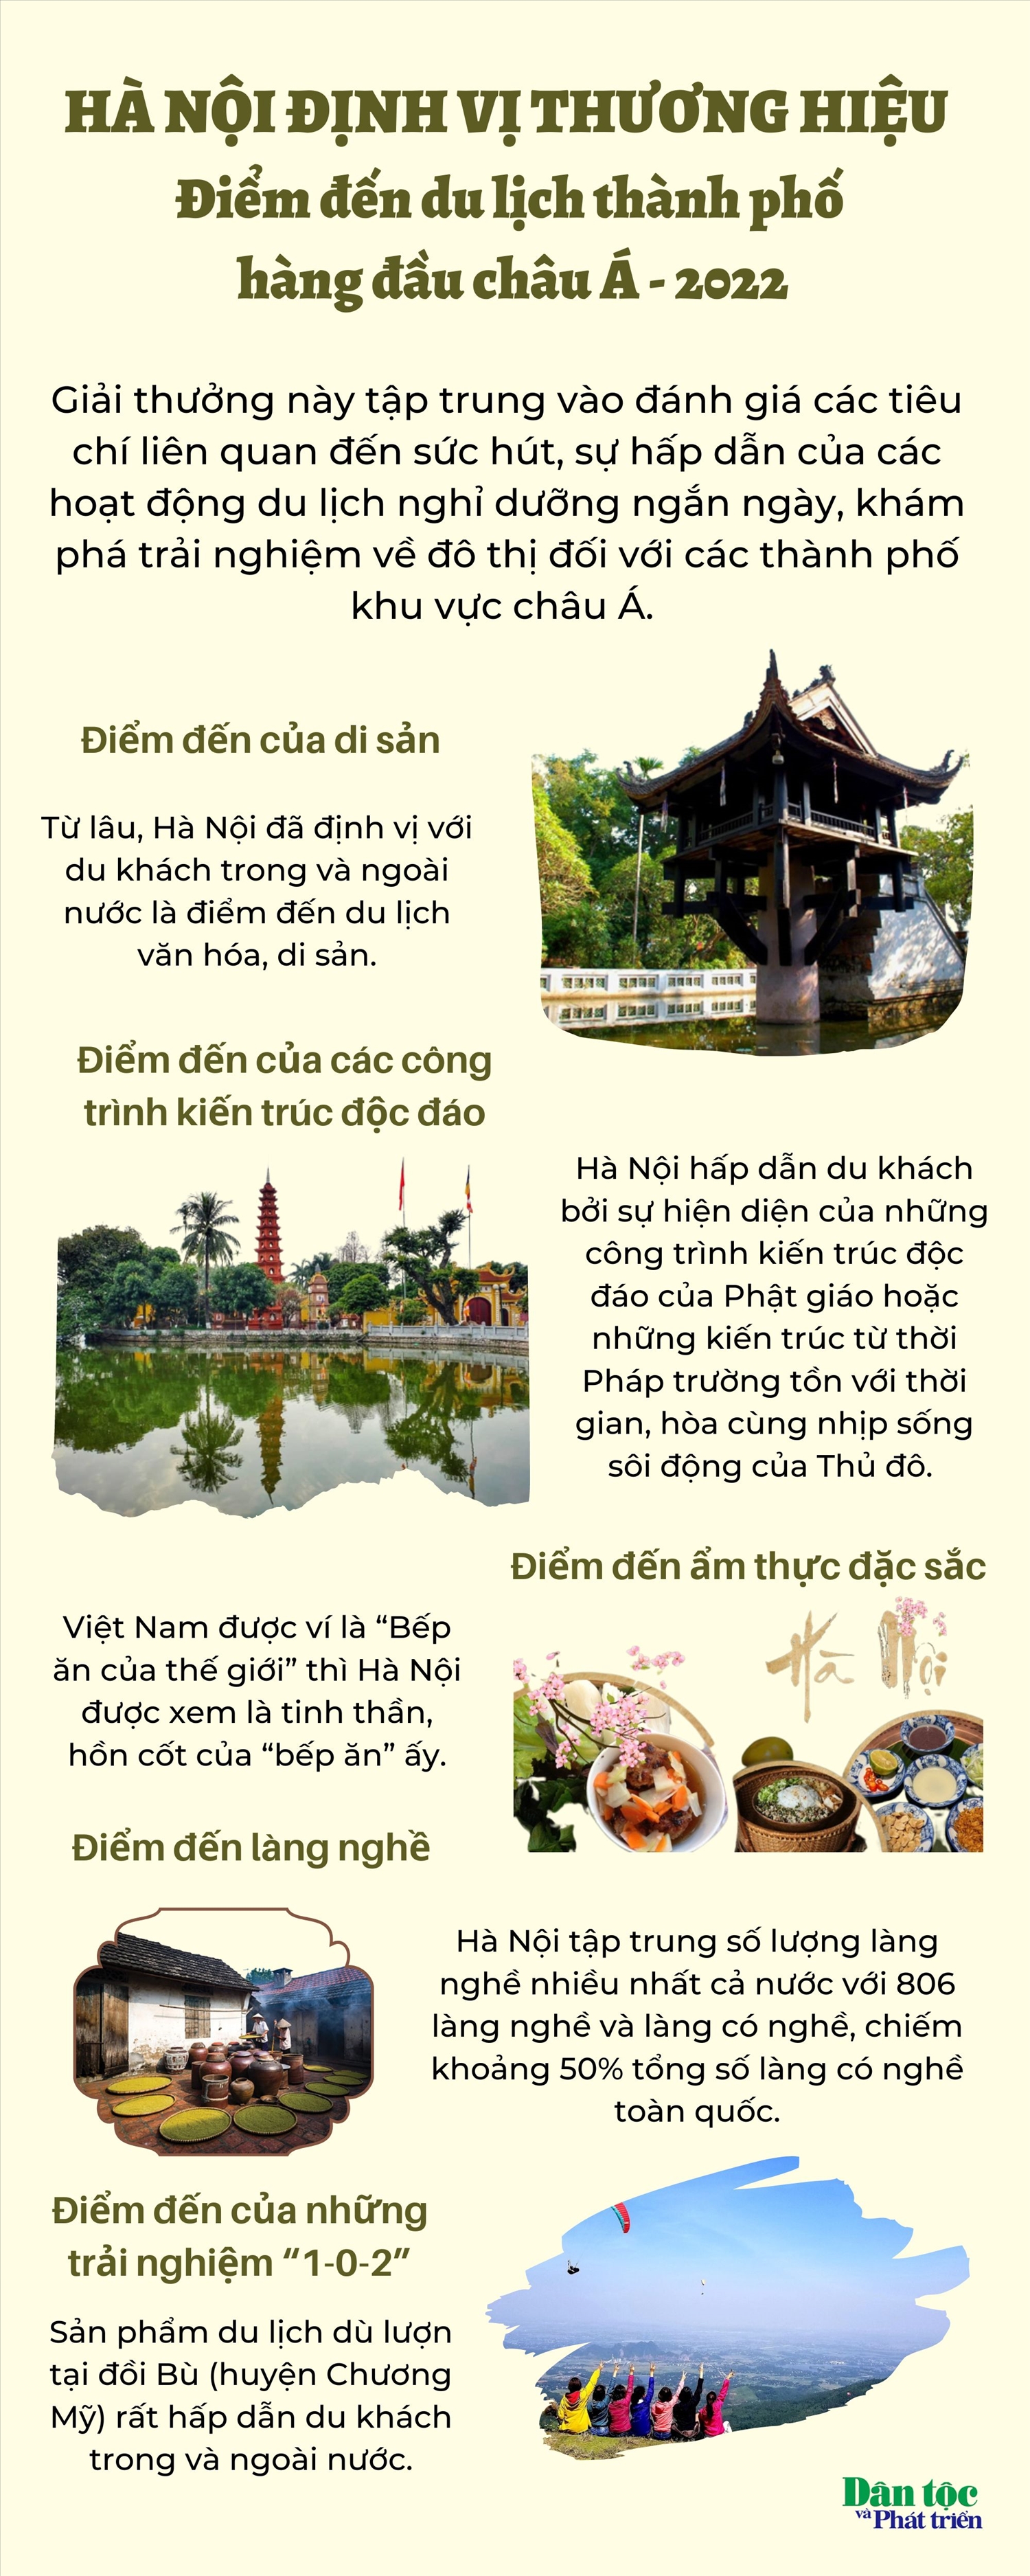 (Tin infographic) Hà Nội: Định vị thương hiệu “Điểm đến du lịch thành phố hàng đầu châu Á”